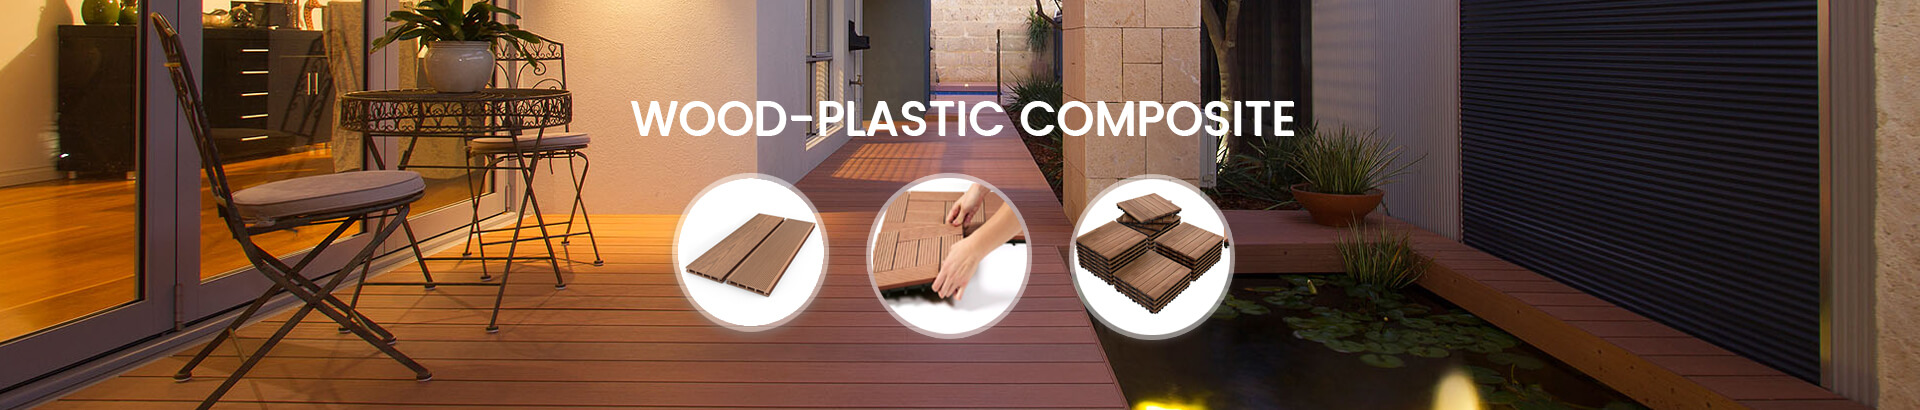 Wood-Plastic Composite